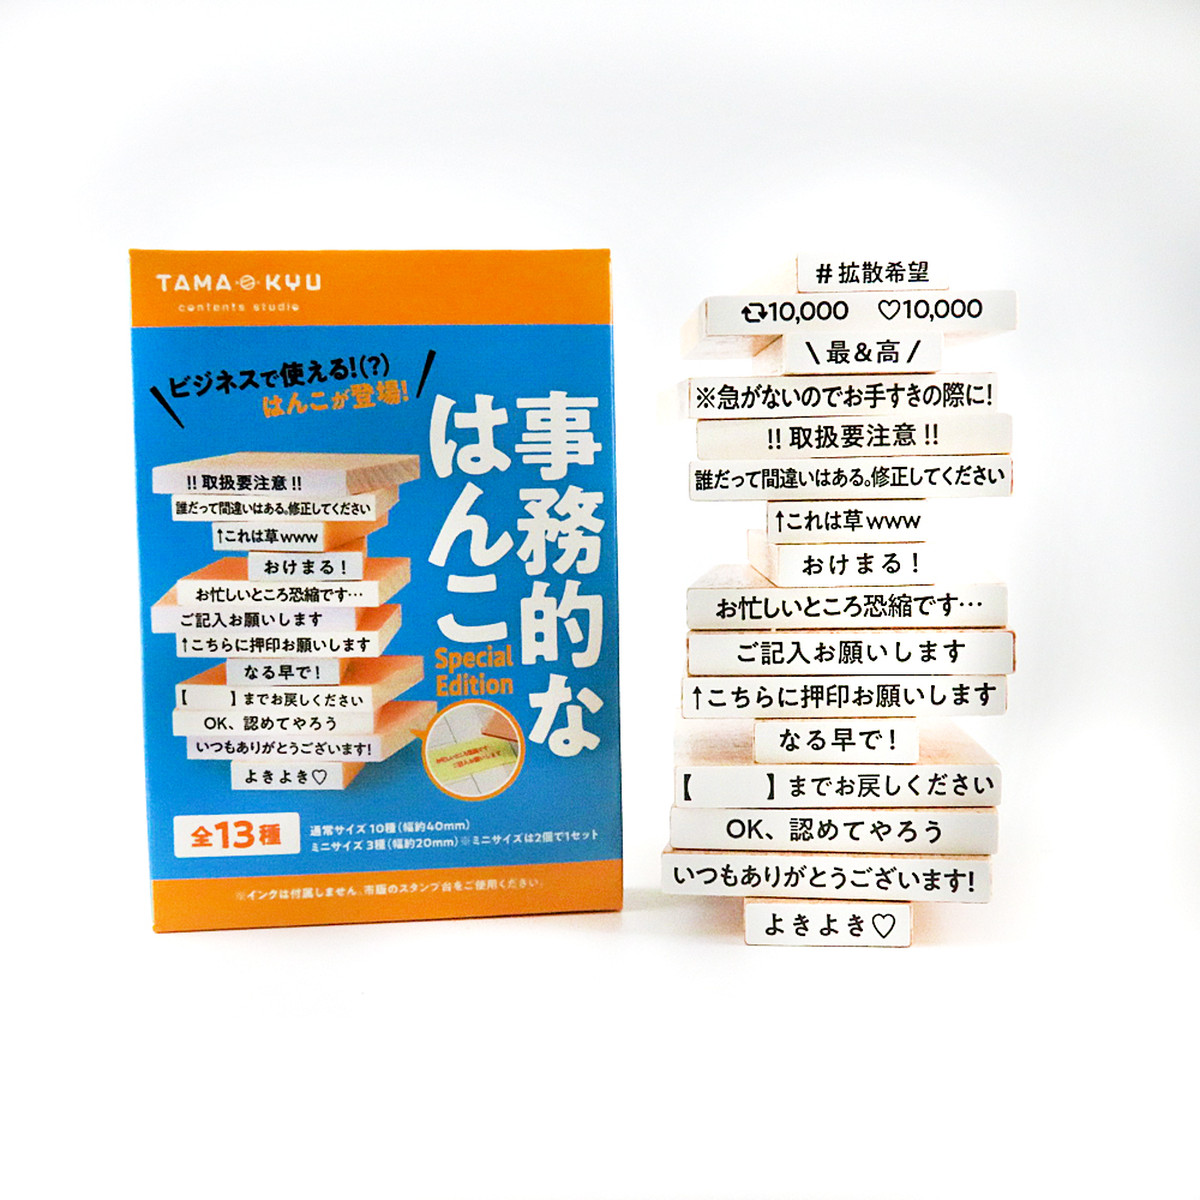 事務的なはんこ Special Edition 全13種セット Tama Kyu Store